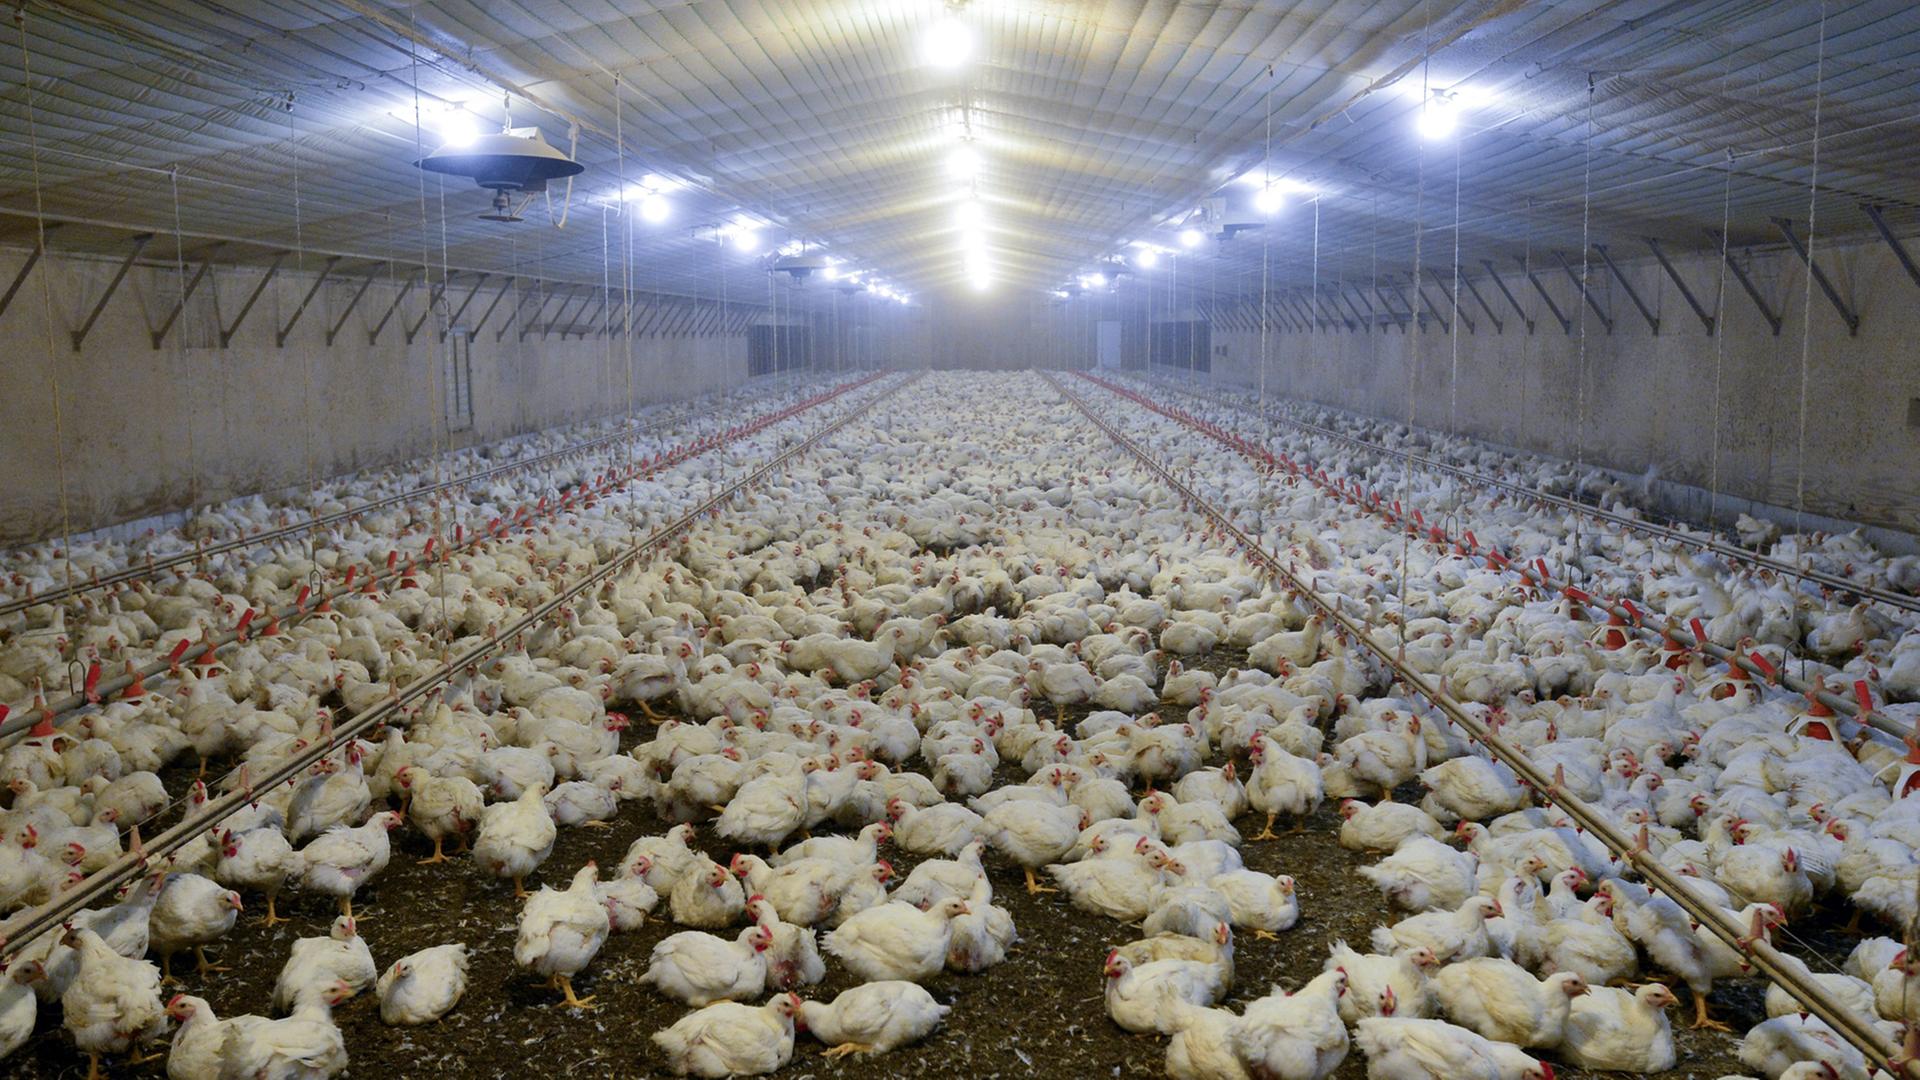 Hühner in einer Halle auf Todd Chapman's Geflügelfarm in Clermont, Georgia, USA, aufgenommen 2013